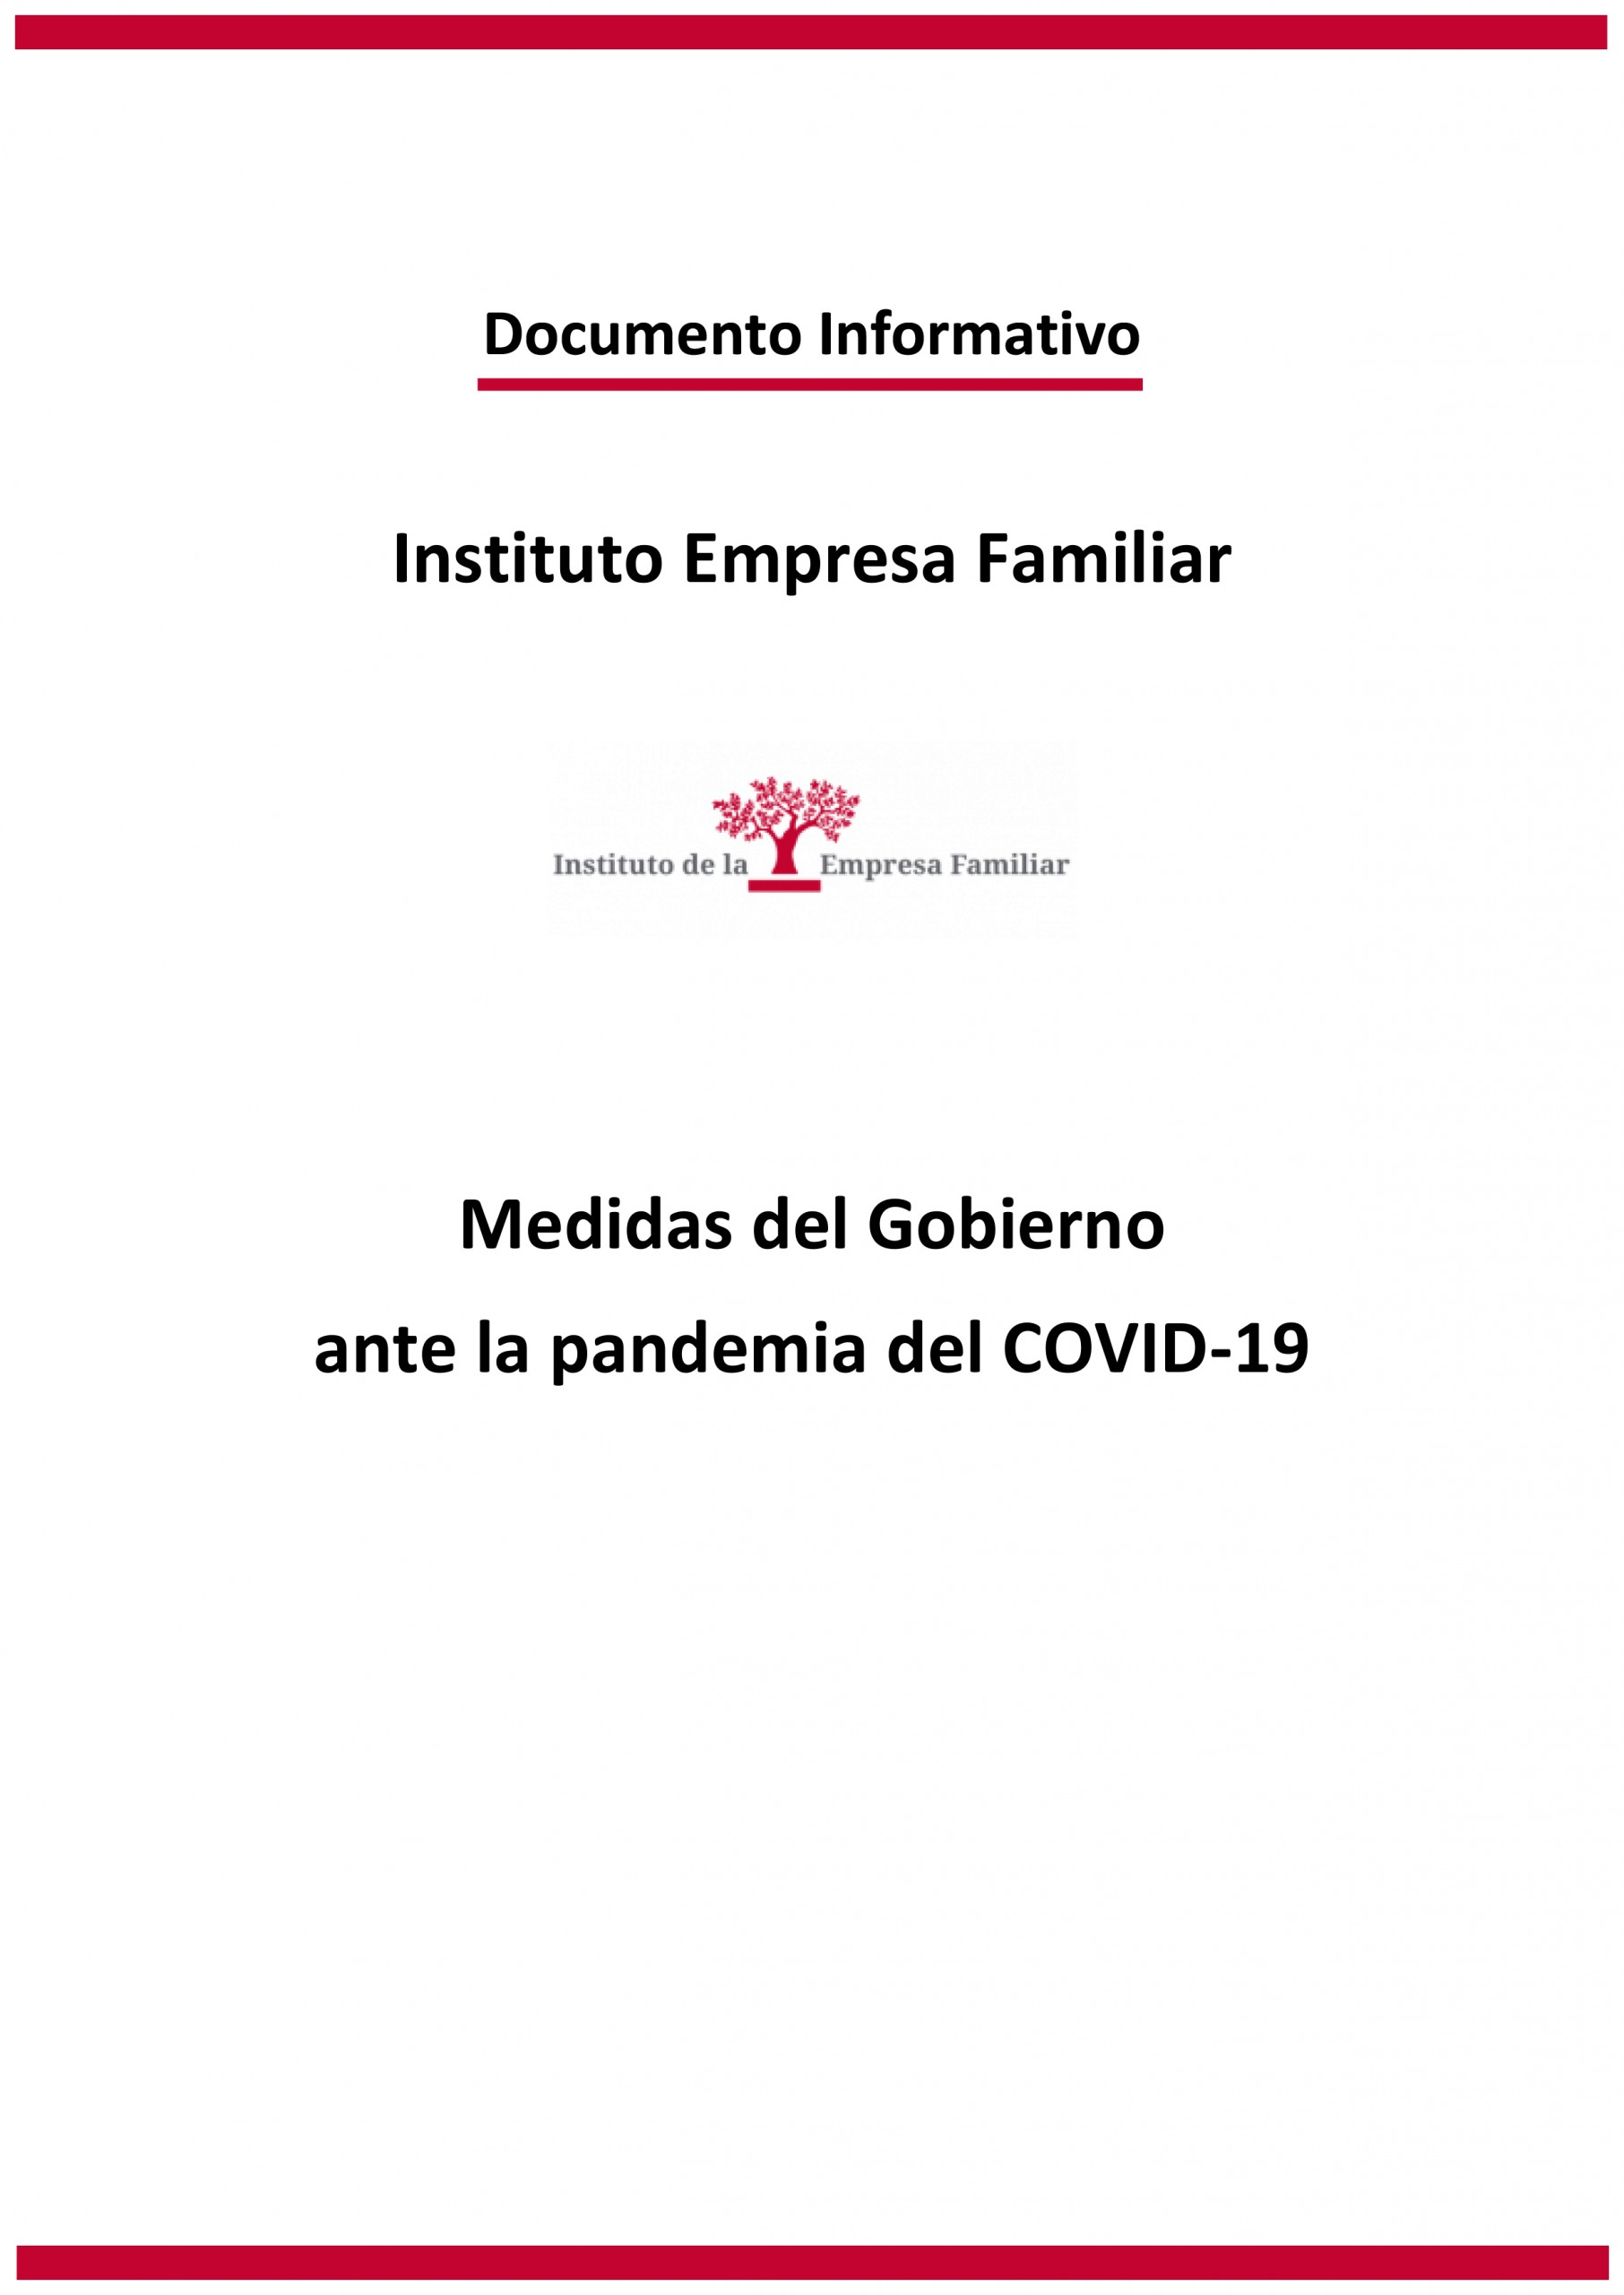 Medidas del Gobierno ante la pandemia del COVID-19